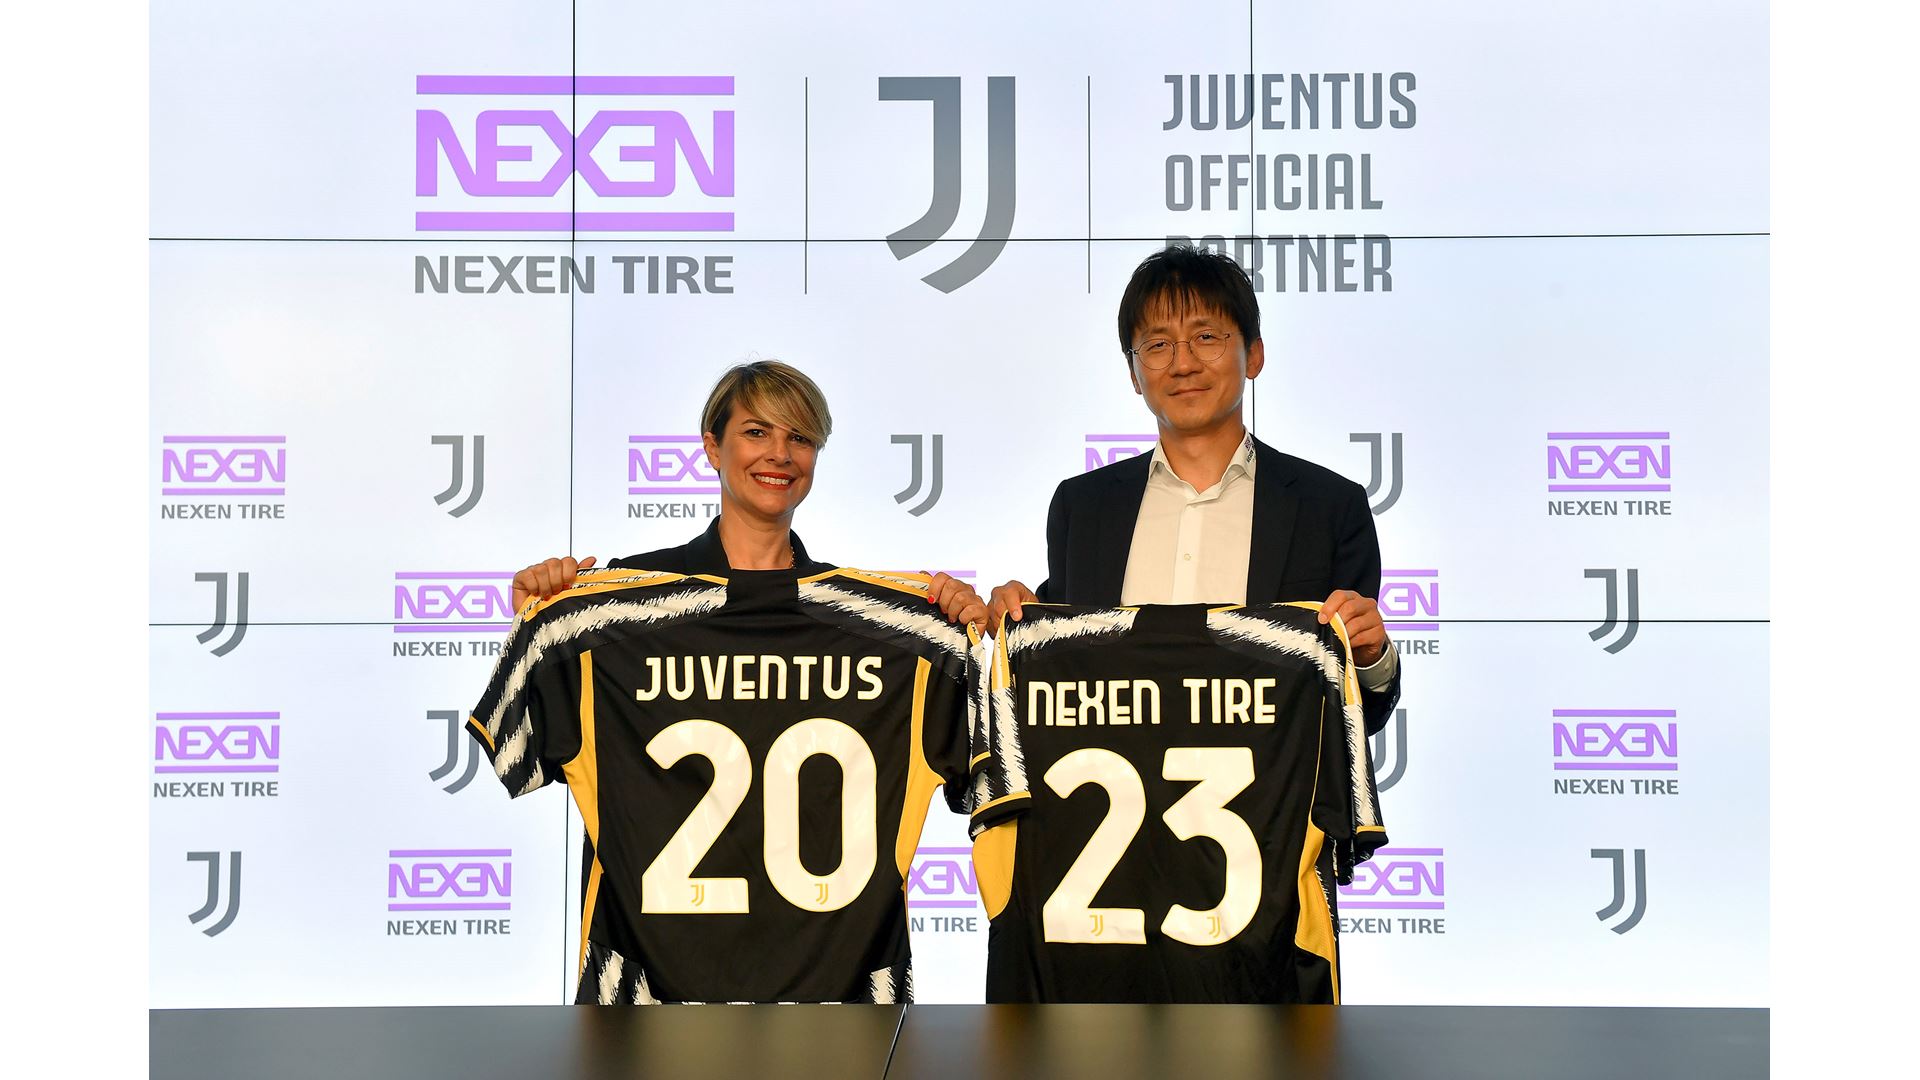 Llantas Nexen Tire nuevo patrocinador de la Juventus de Italia